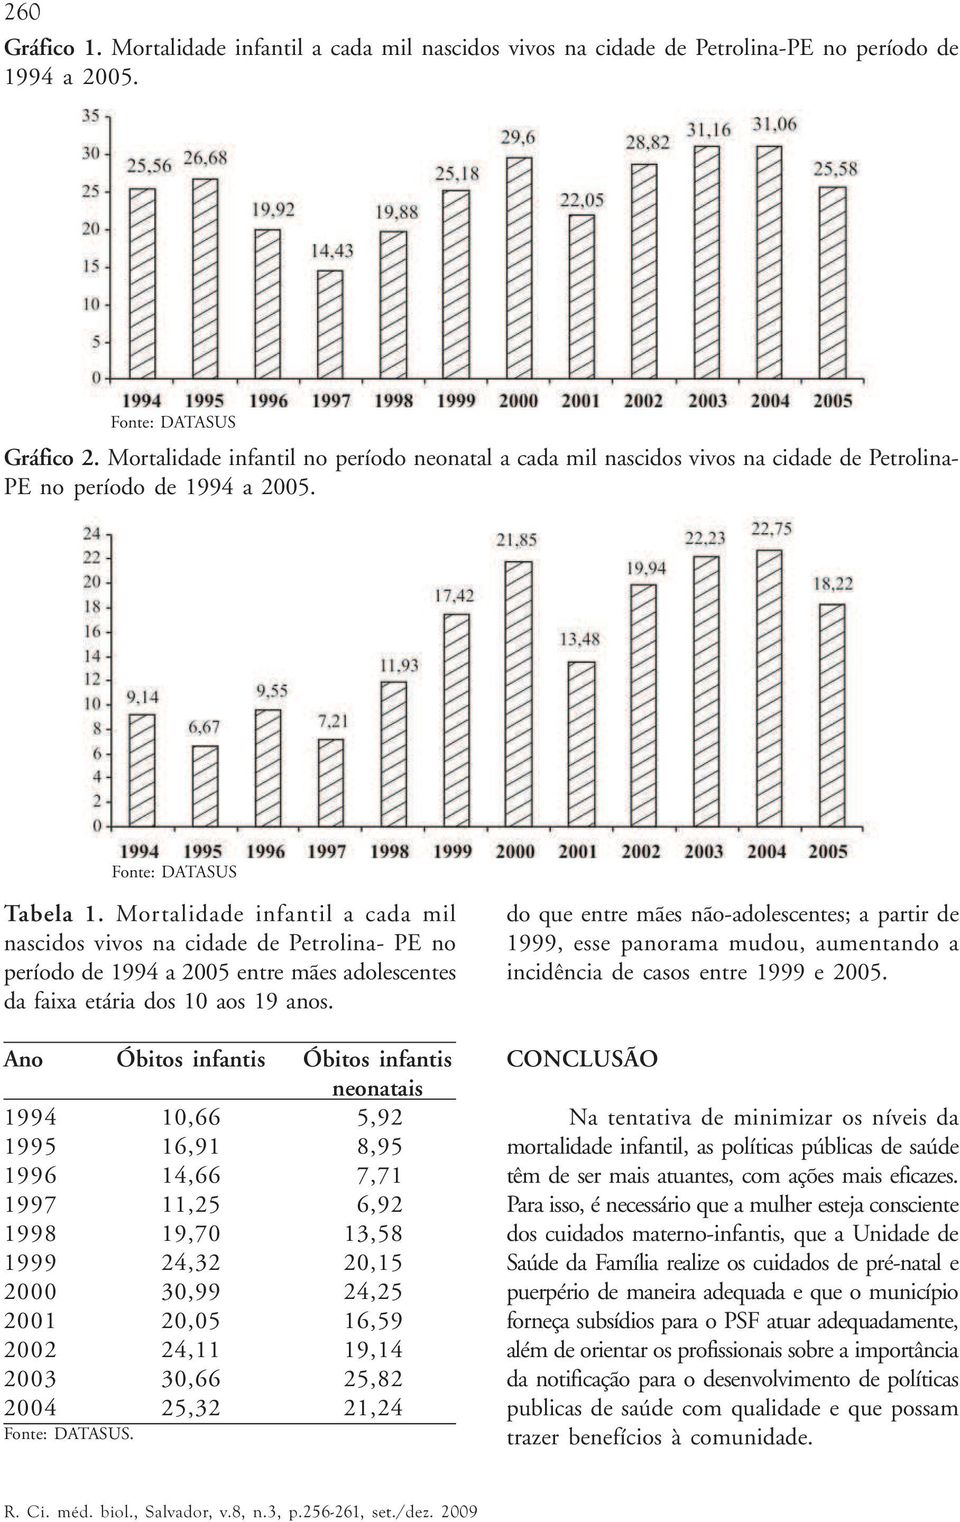 Mortalidade infantil a cada mil nascidos vivos na cidade de Petrolina- PE no período de 1994 a 2005 entre mães adolescentes da faixa etária dos 10 aos 19 anos.